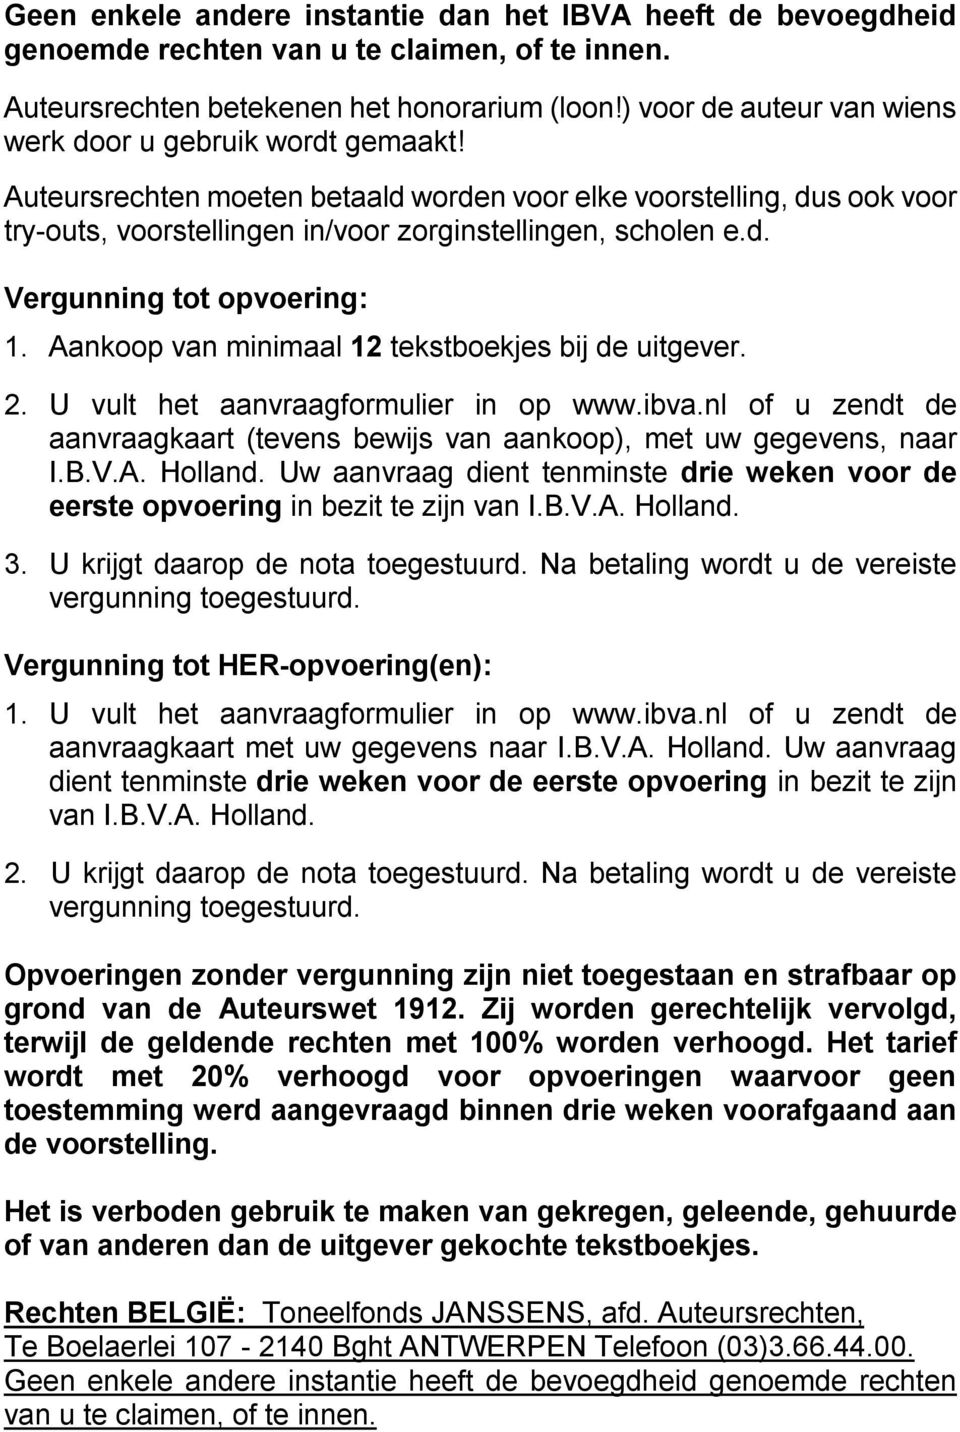 Aankoop van minimaal 12 tekstboekjes bij de uitgever. 2. U vult het aanvraagformulier in op www.ibva.nl of u zendt de aanvraagkaart (tevens bewijs van aankoop), met uw gegevens, naar I.B.V.A. Holland.